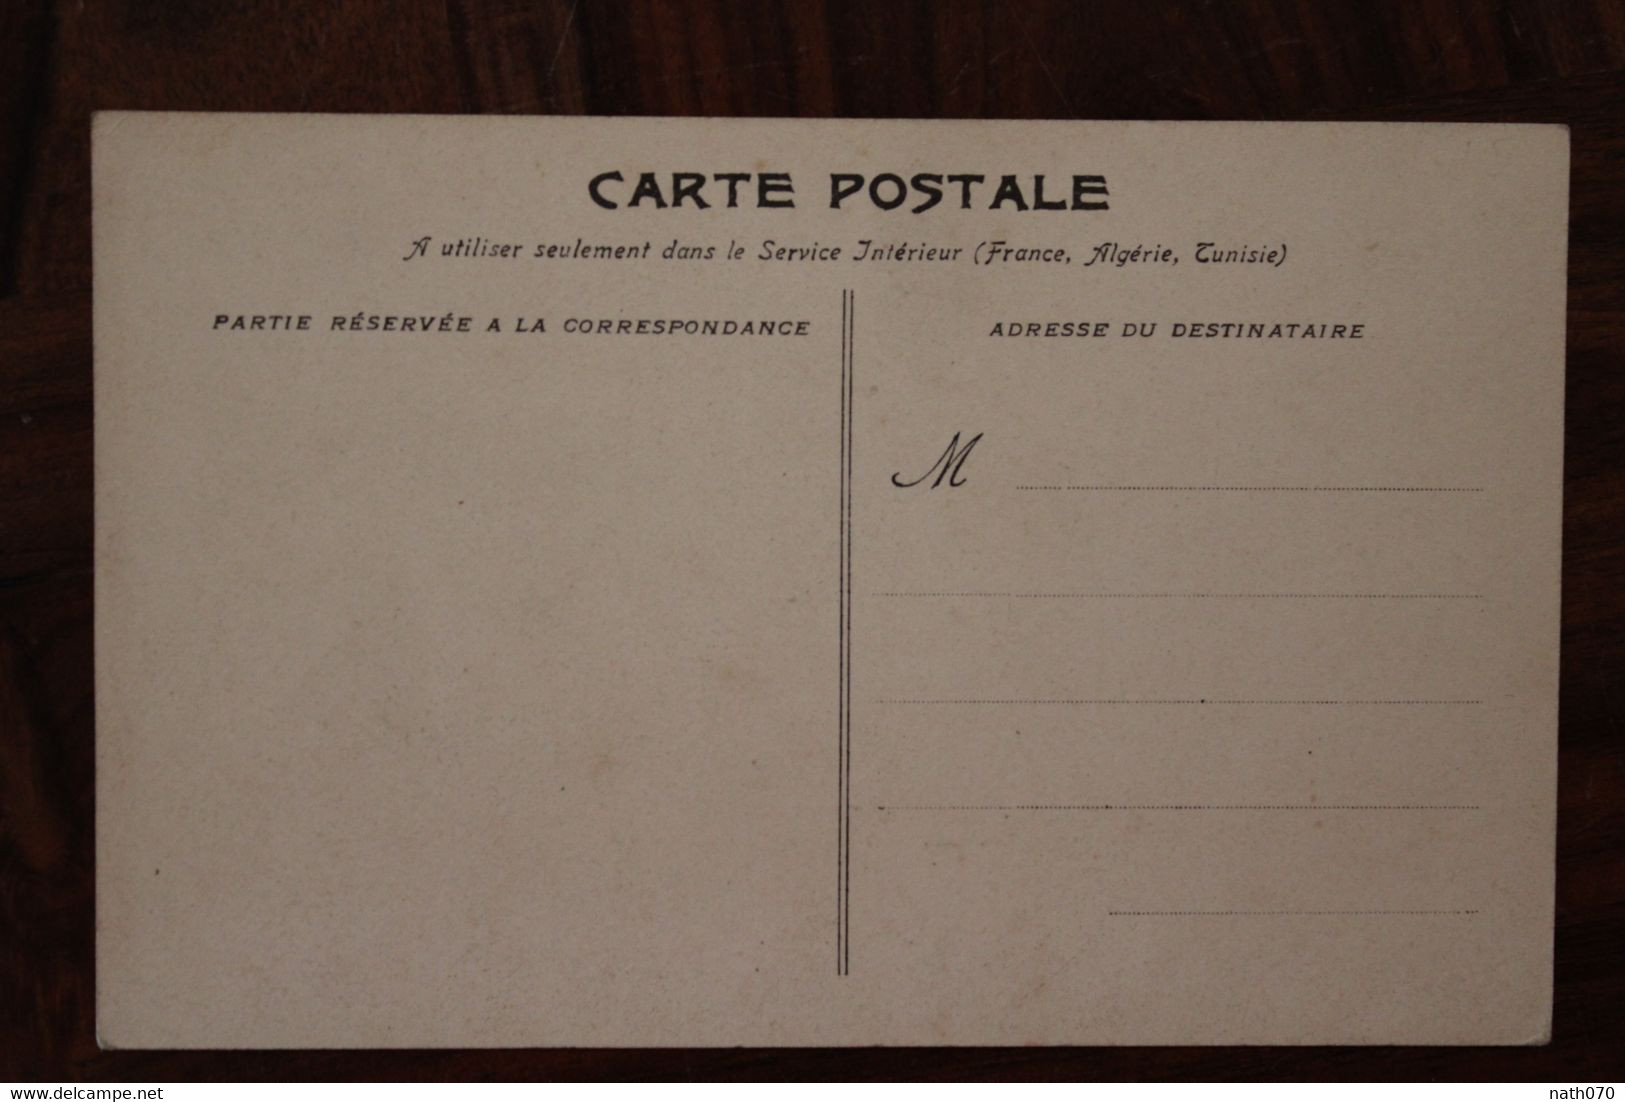 1910's CPA Ak Publicité Pub Illustrateur Saint-Galmier Source Badoit Mousquetaire - Advertising